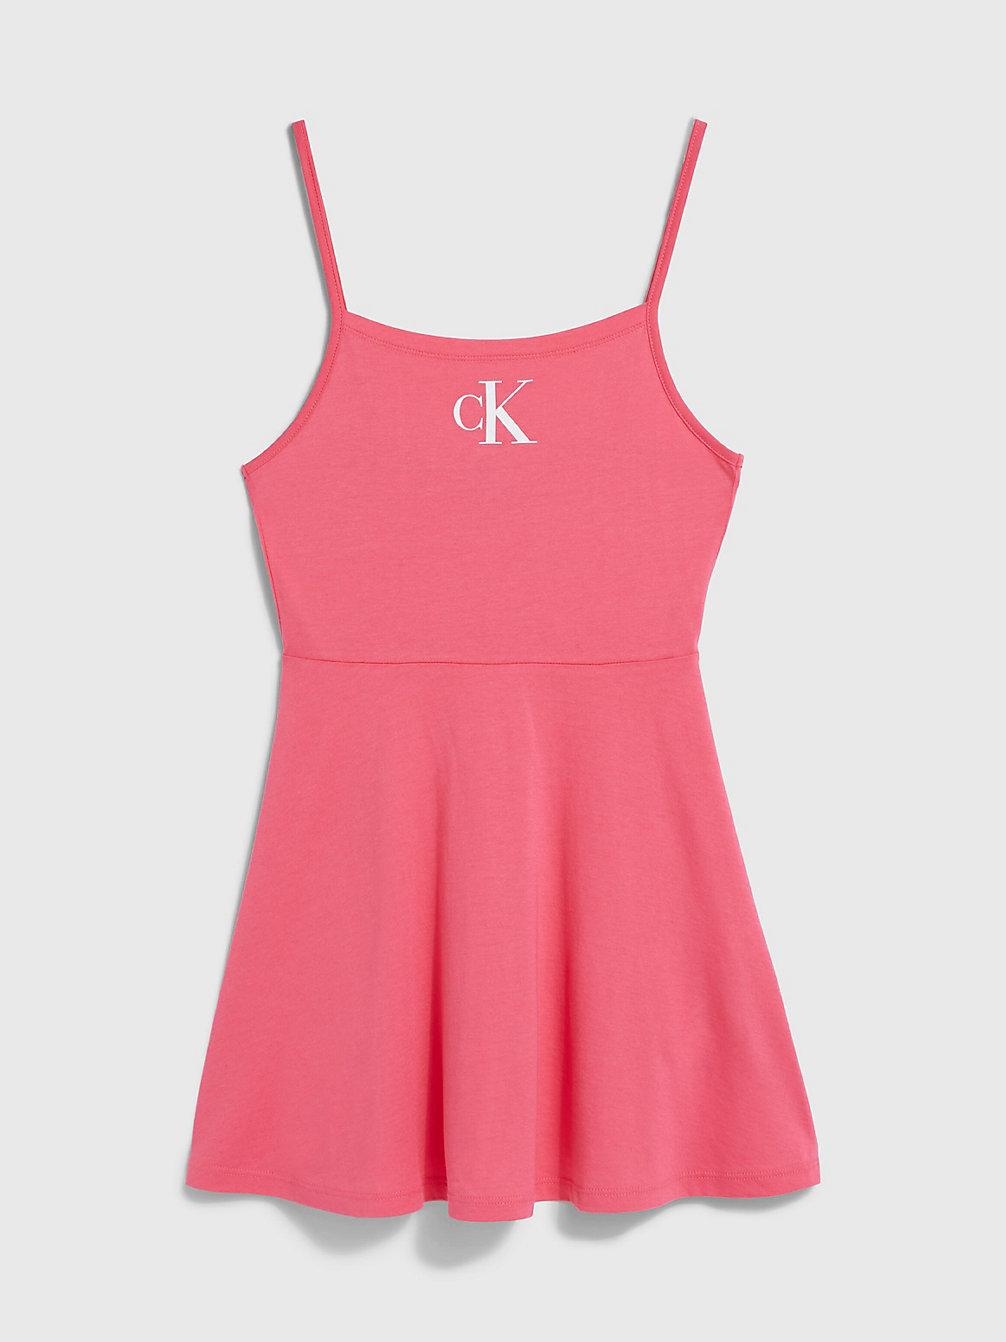 PINK FLASH > Sukienka Plażowa Dziewczęca - CK Monogram > undefined girls - Calvin Klein